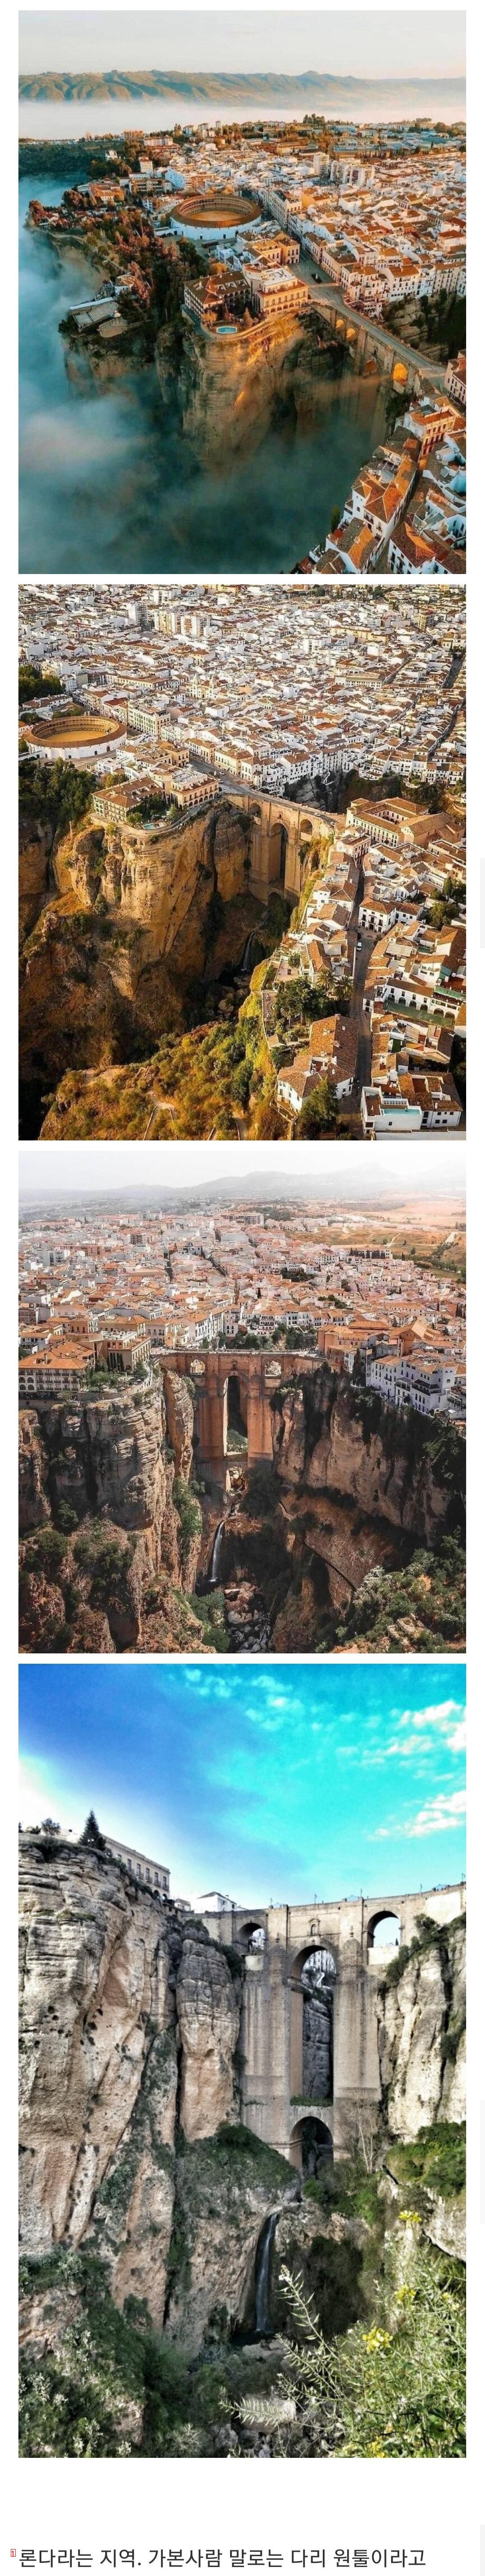 スペインに実際に存在する都市